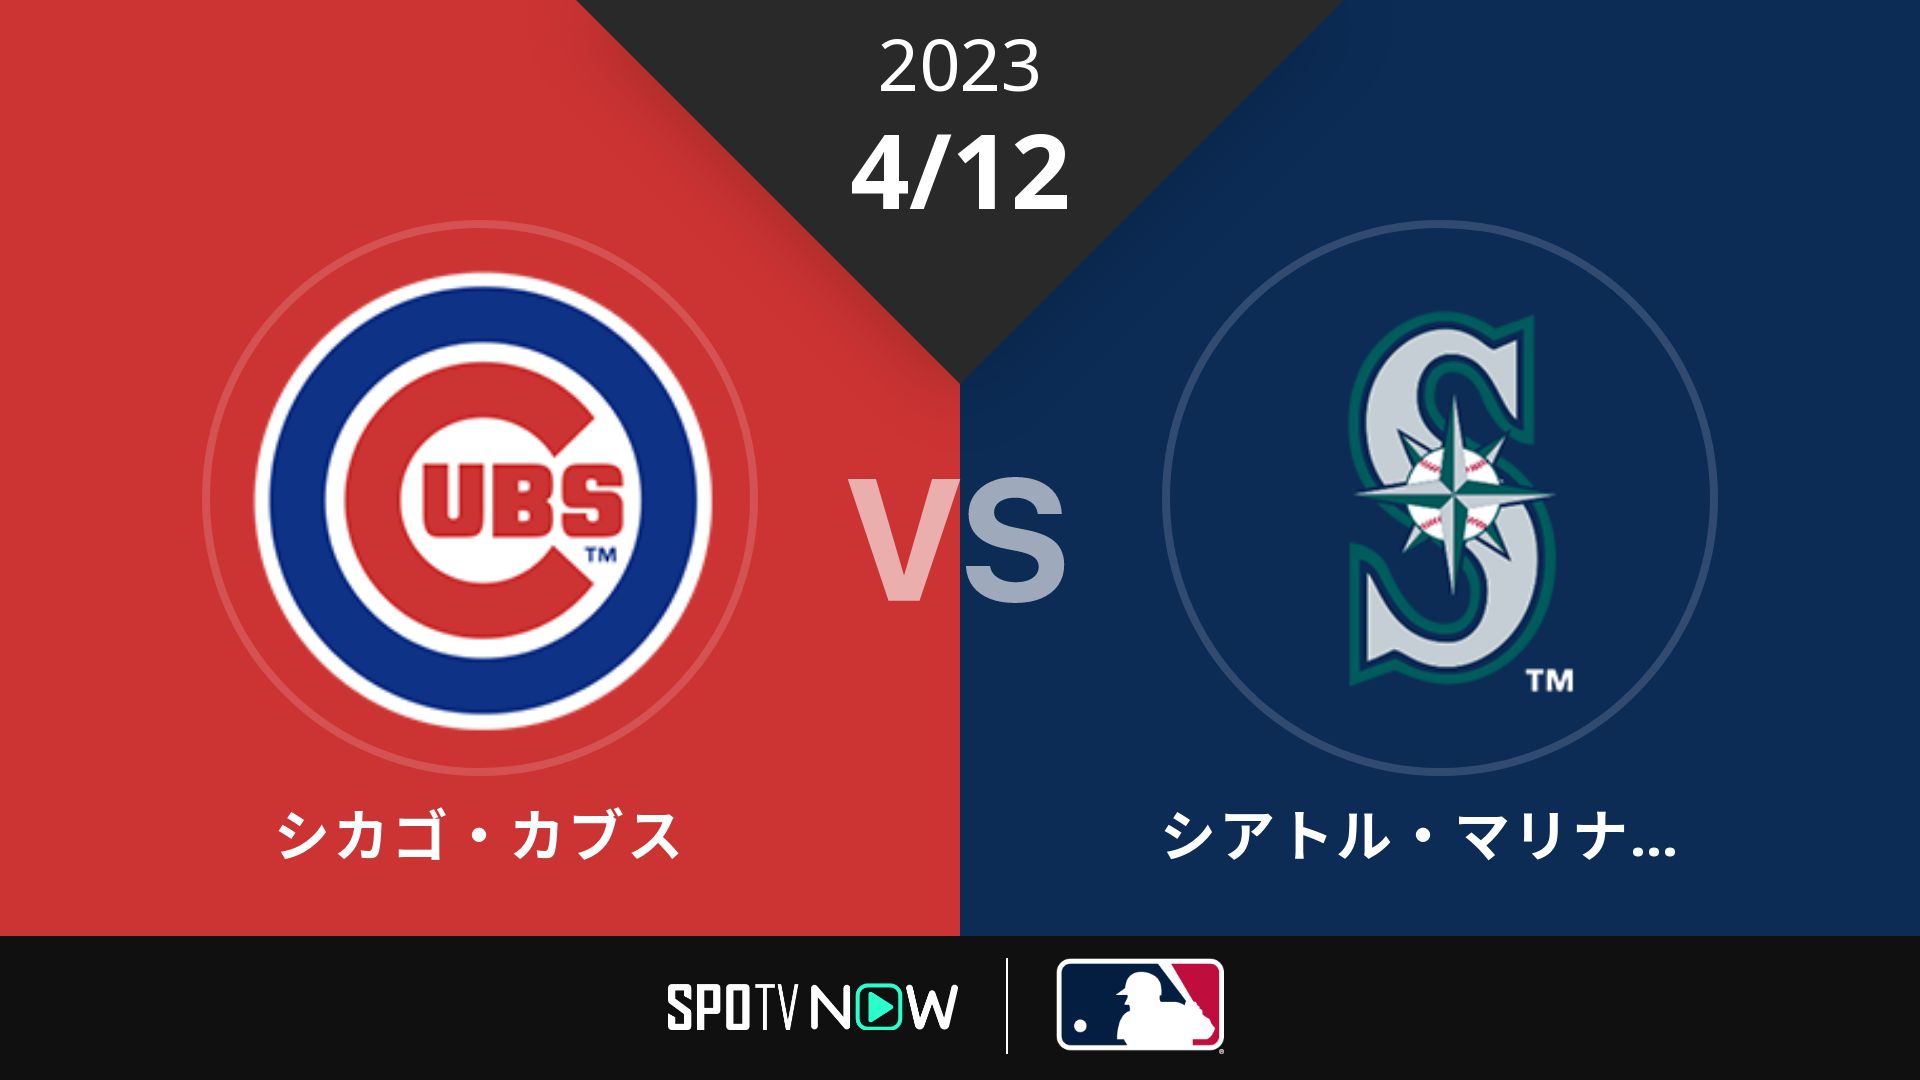 2023/4/12 カブス vs マリナーズ [MLB]